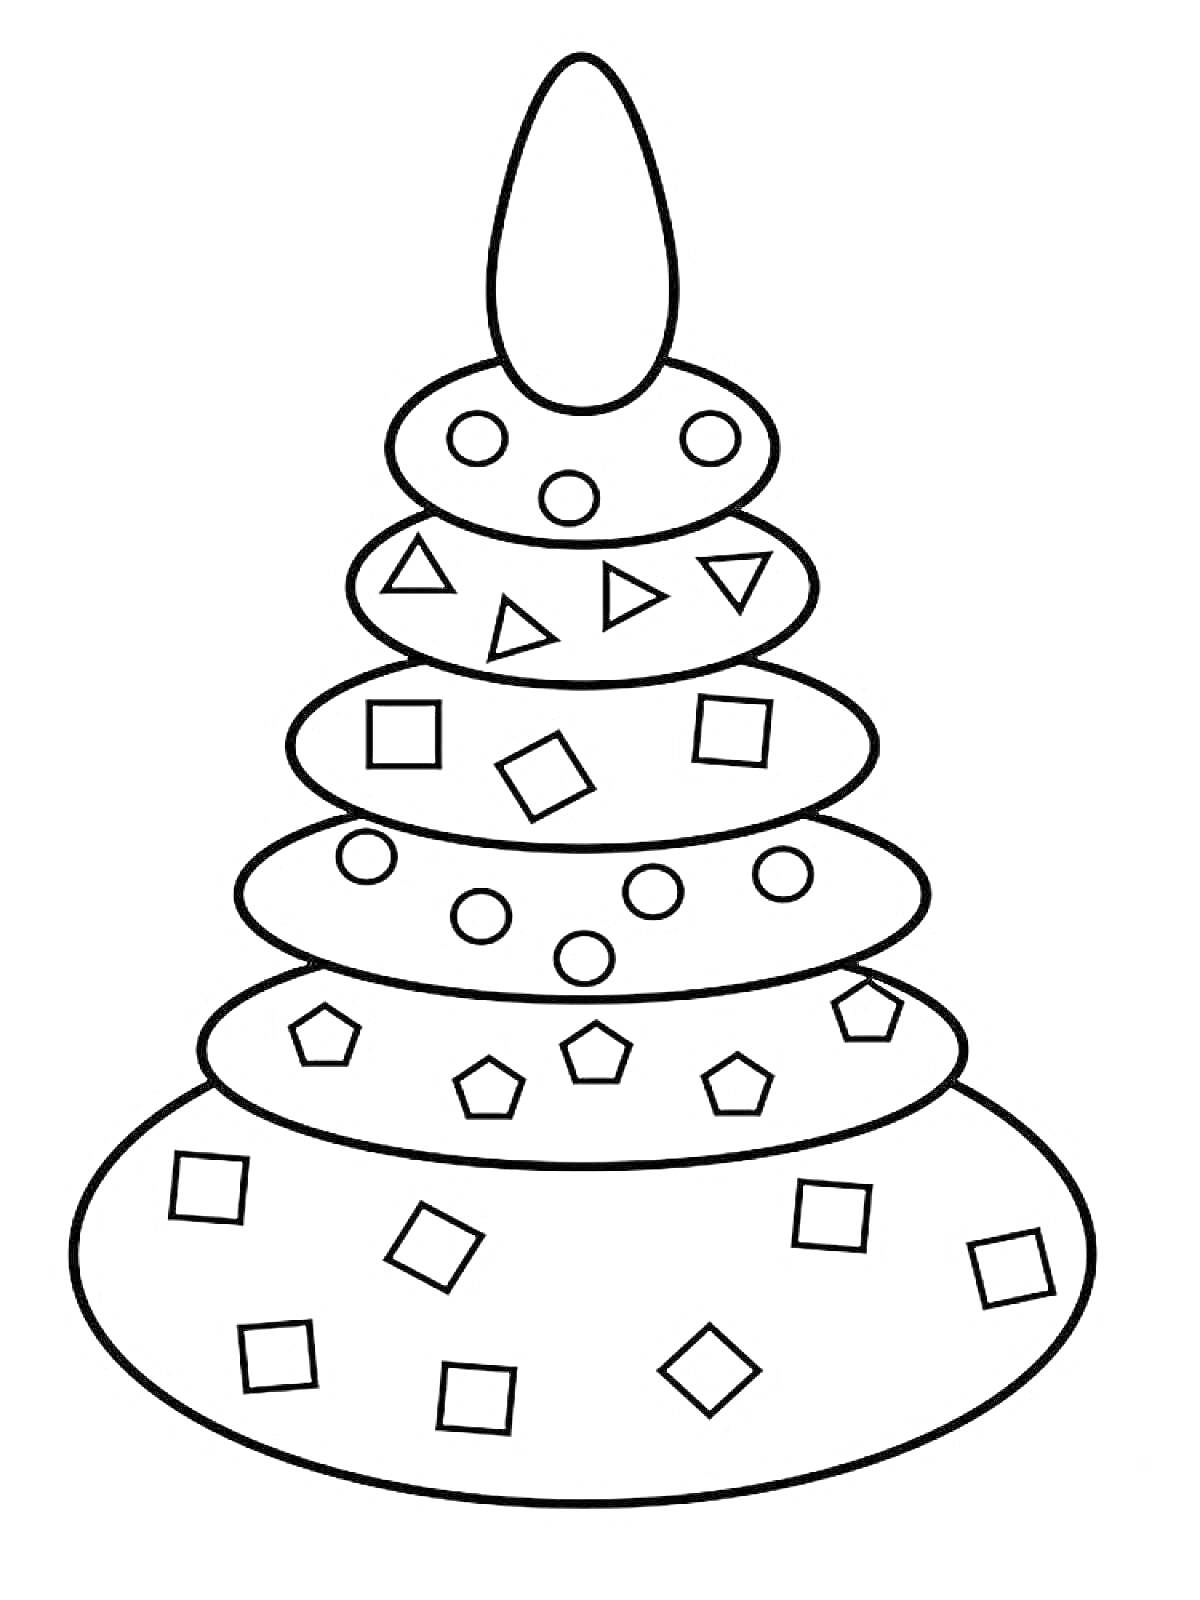 Раскраска Пирамидка из шести частей с кругами, квадратиками и треугольниками